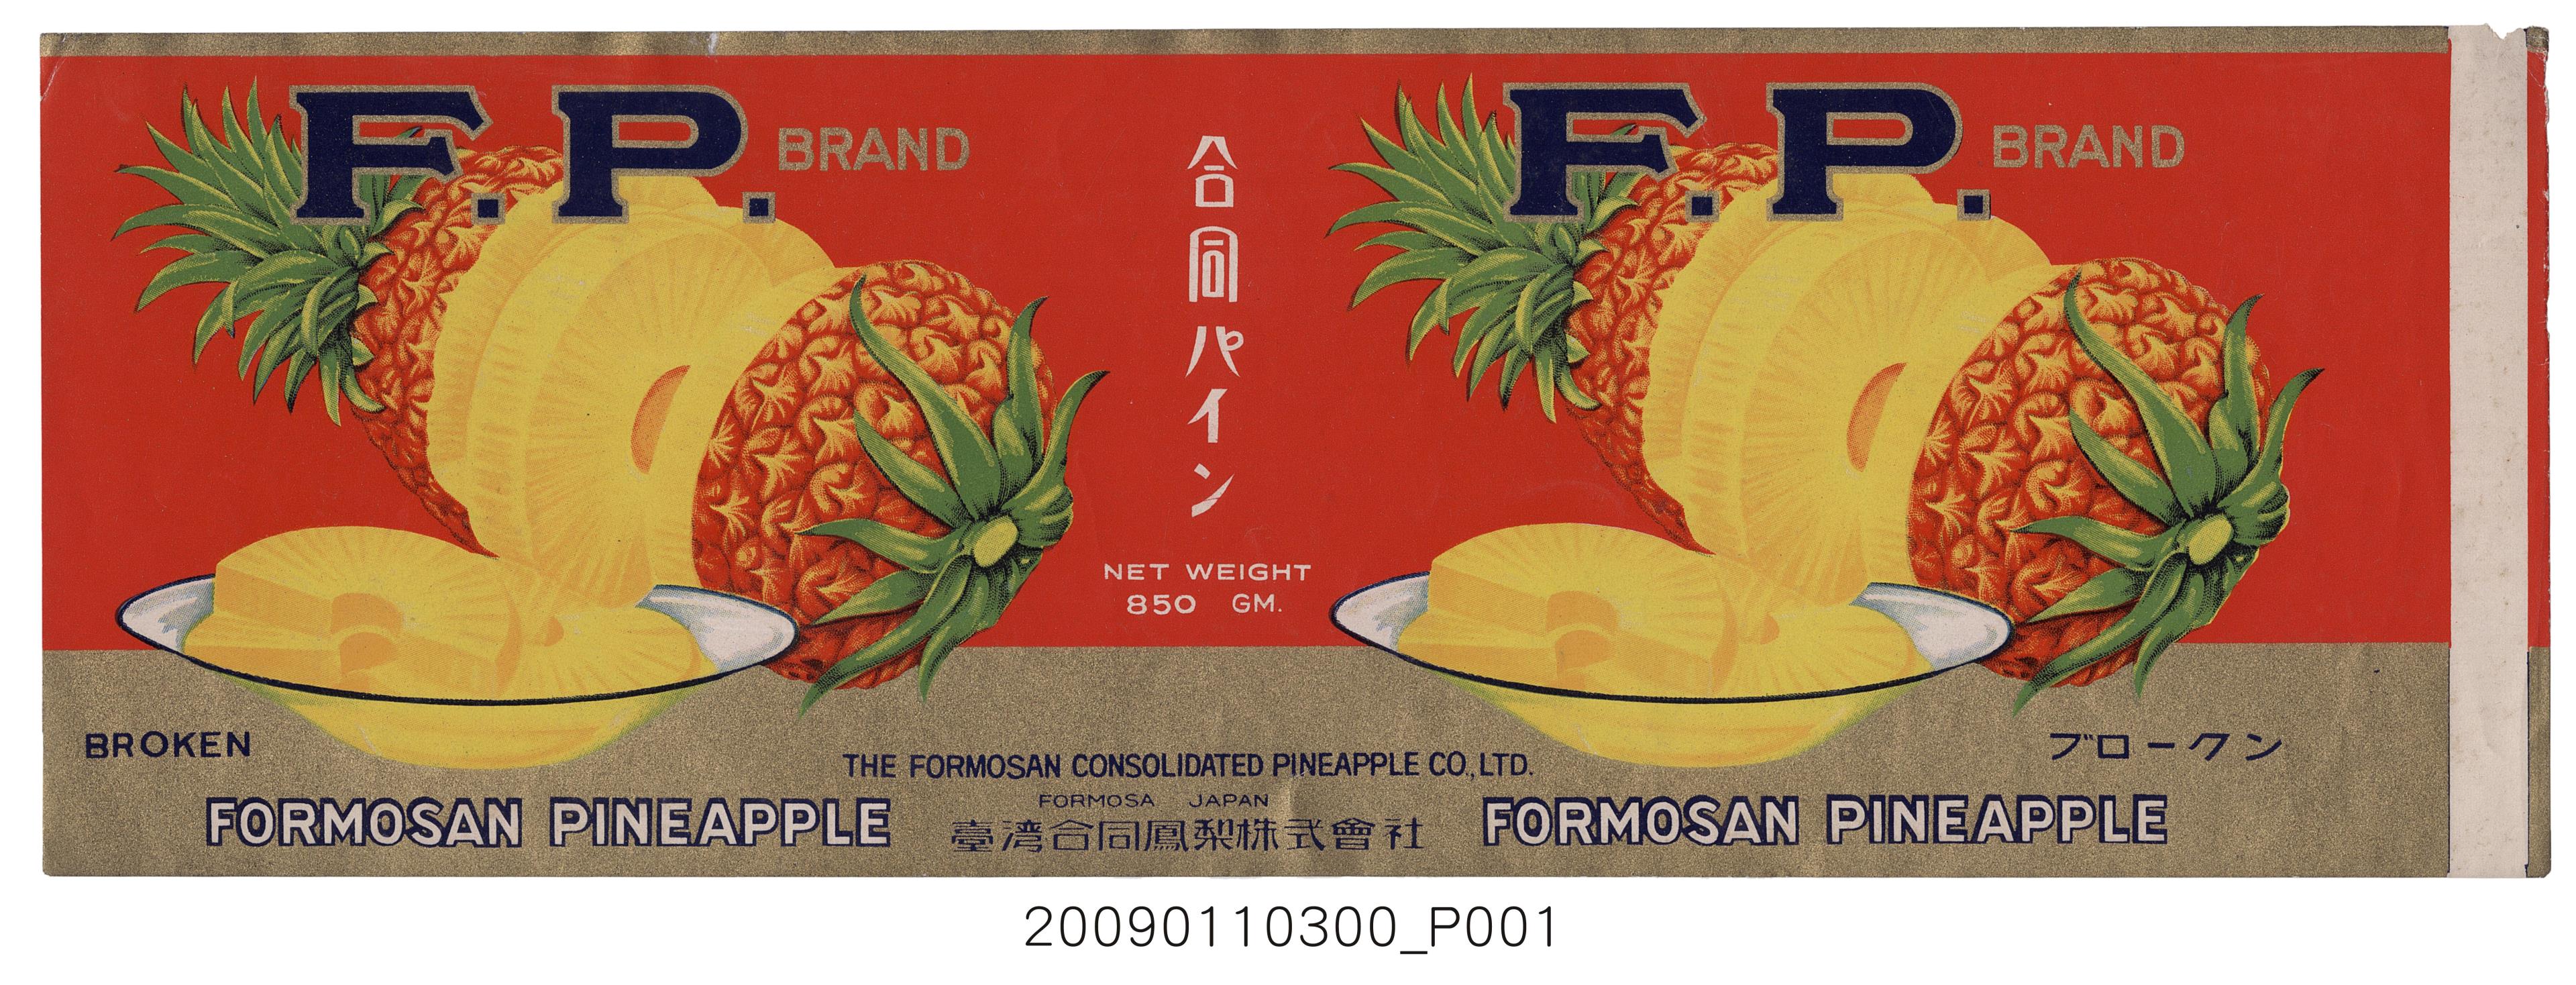 臺灣合同鳳梨株式會社F.P. BRAND鳳梨罐頭二分片裝標籤紙 (共1張)